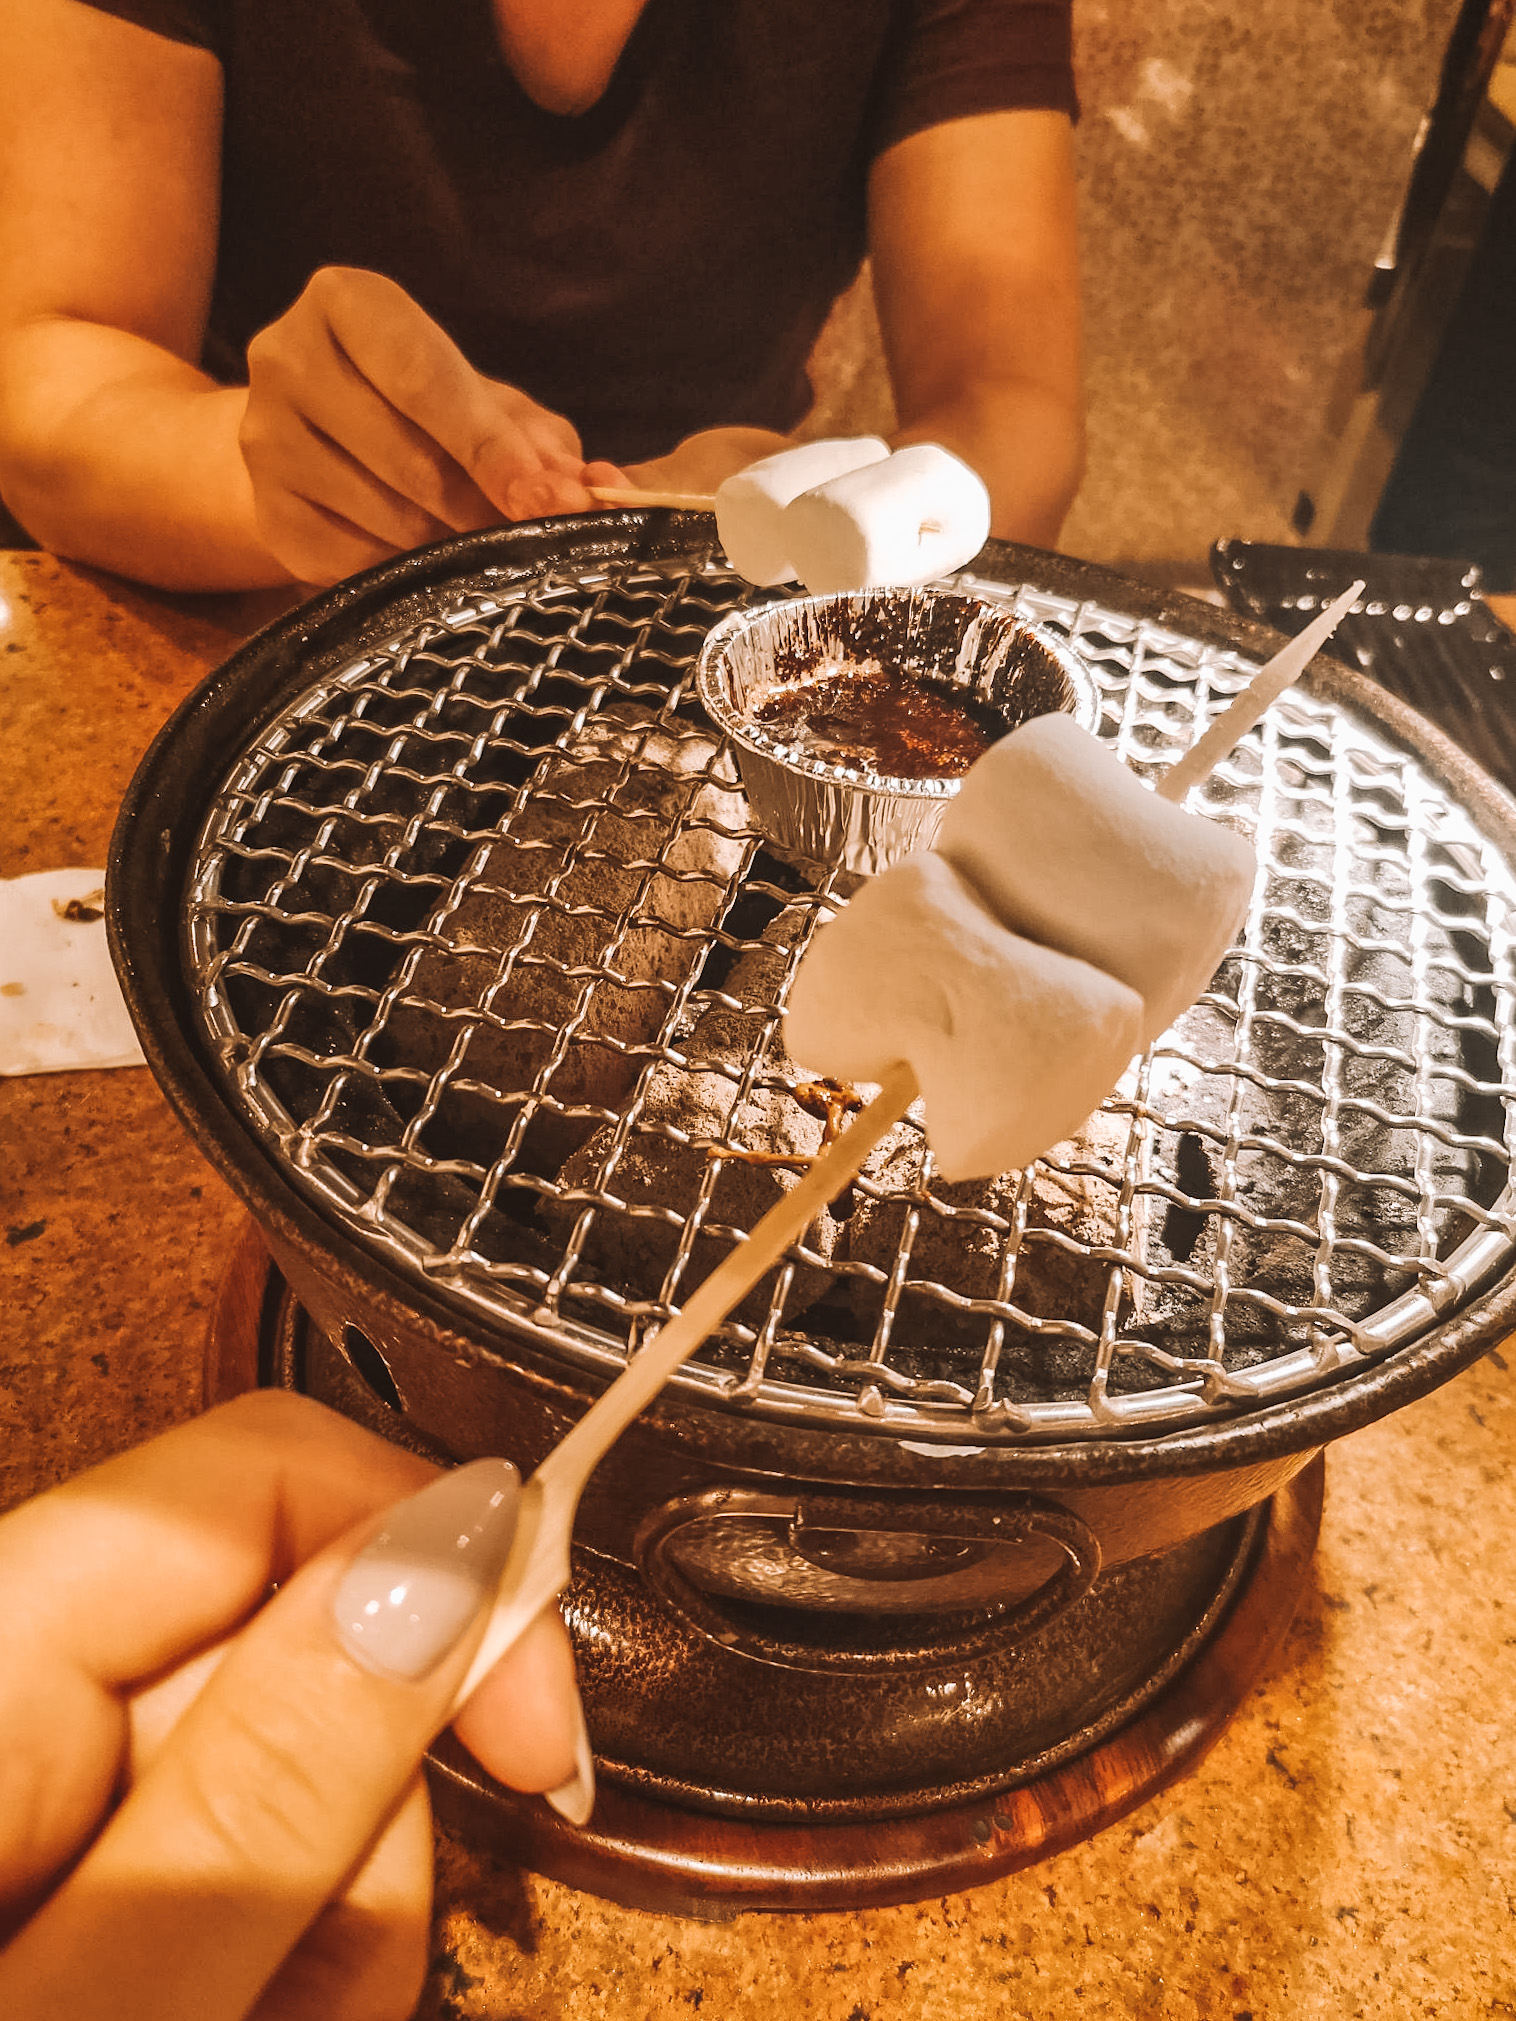 20200309-phuket-thailand-dinner-grill-smores